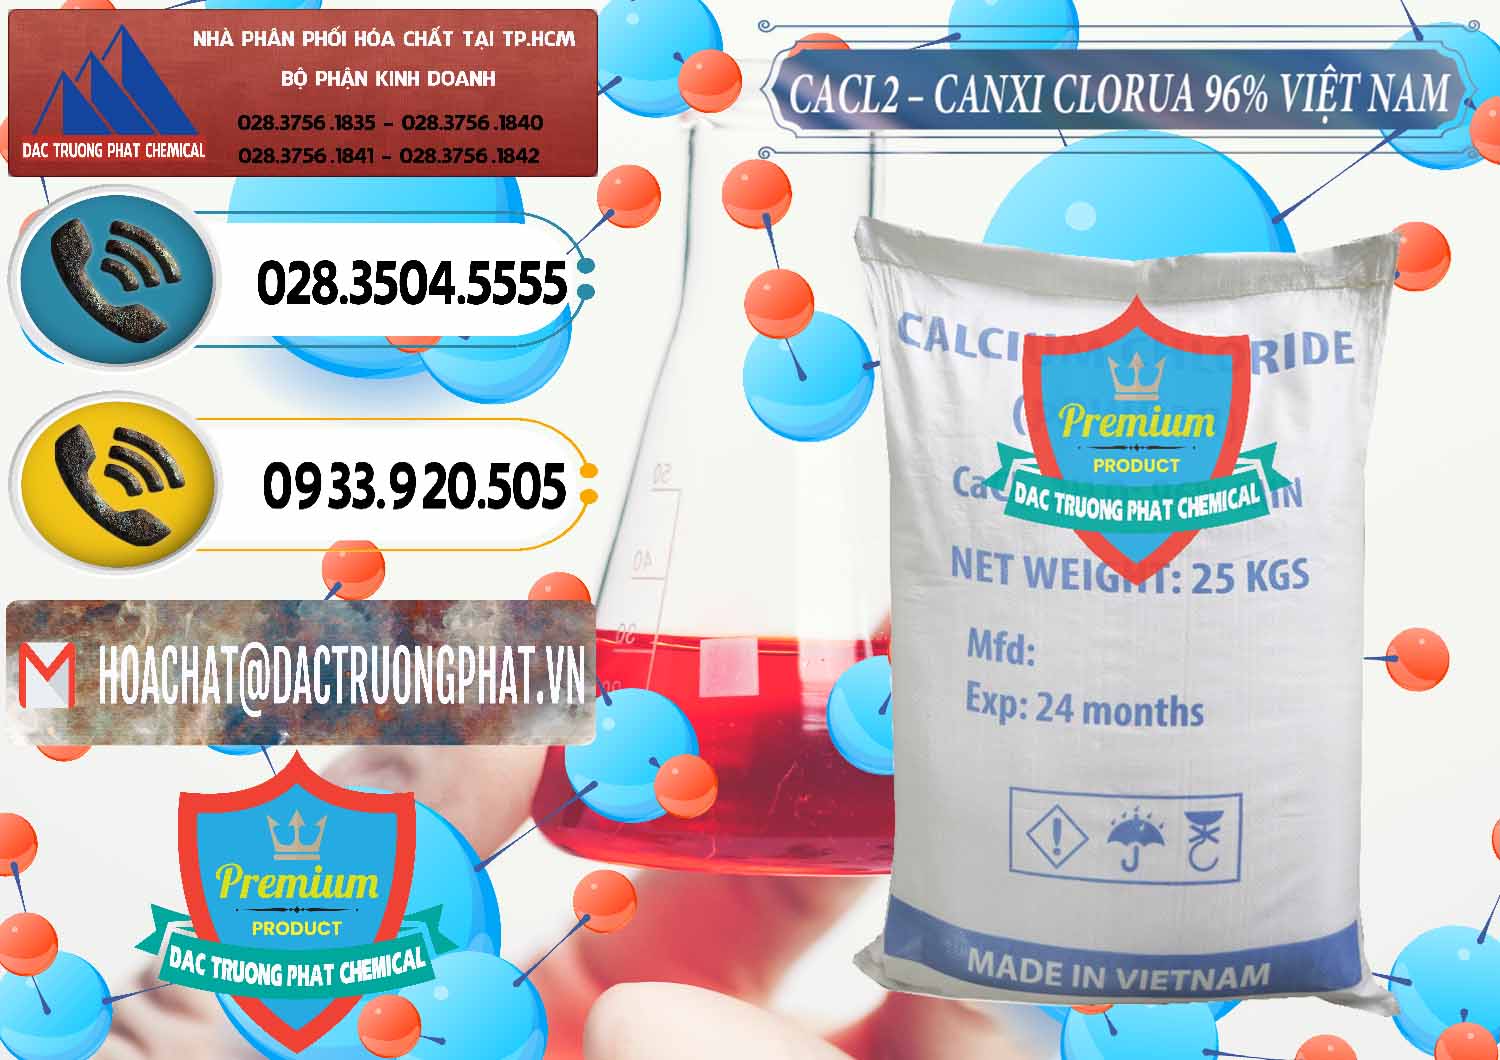 Công ty chuyên bán & phân phối CaCl2 – Canxi Clorua 96% Việt Nam - 0236 - Công ty bán và cung cấp hóa chất tại TP.HCM - hoachatdetnhuom.vn